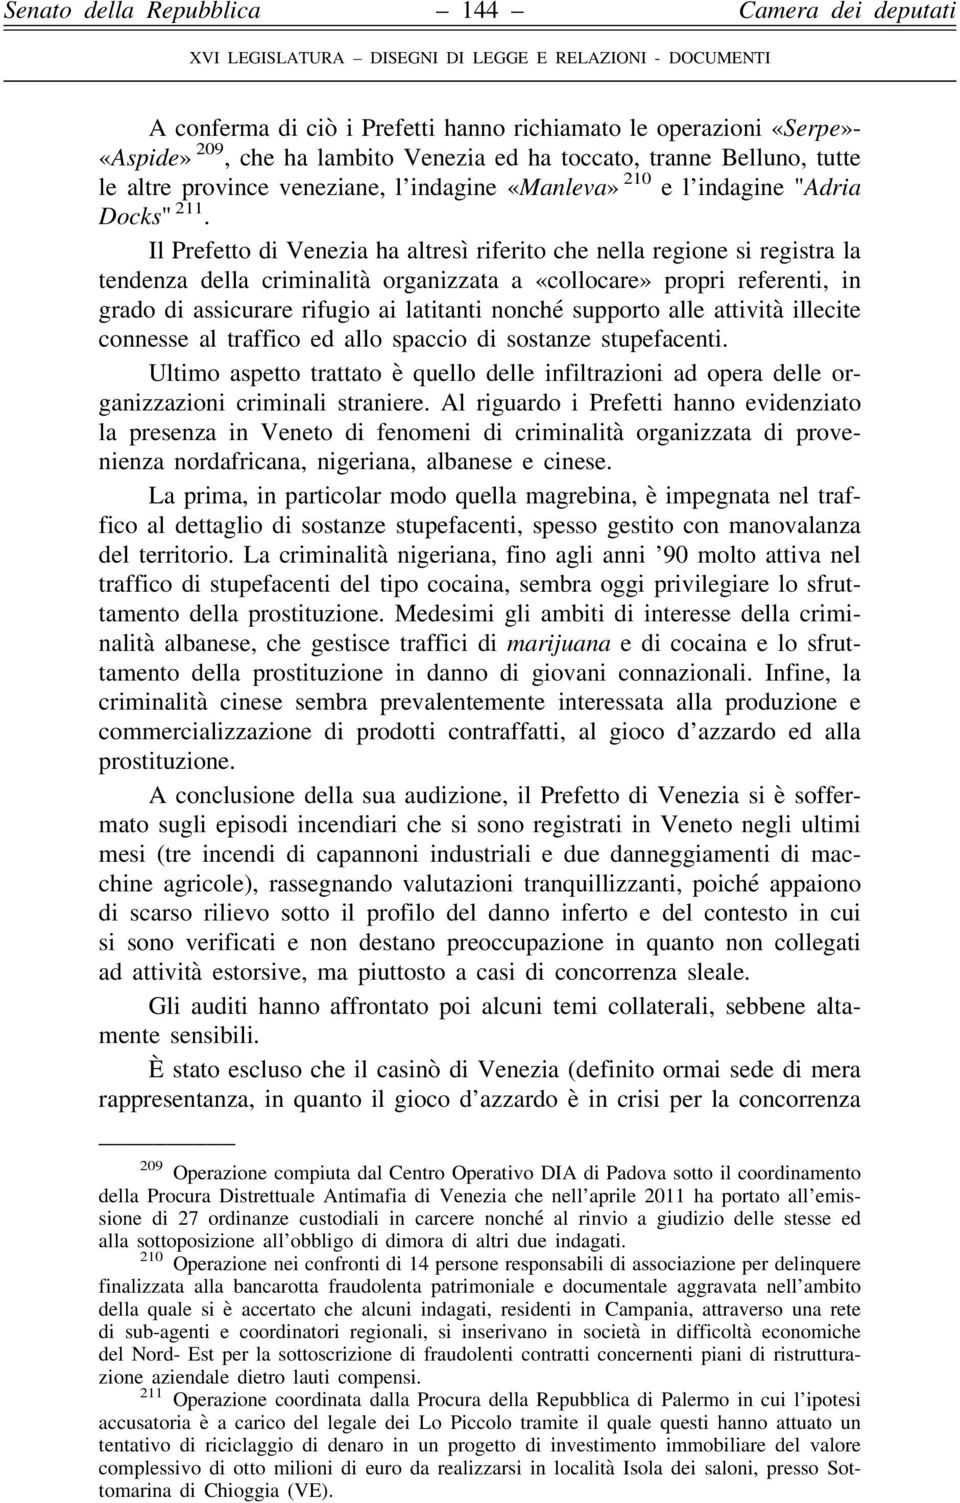 Il Prefetto di Venezia ha altresì riferito che nella regione si registra la tendenza della criminalità organizzata a «collocare» propri referenti, in grado di assicurare rifugio ai latitanti nonché